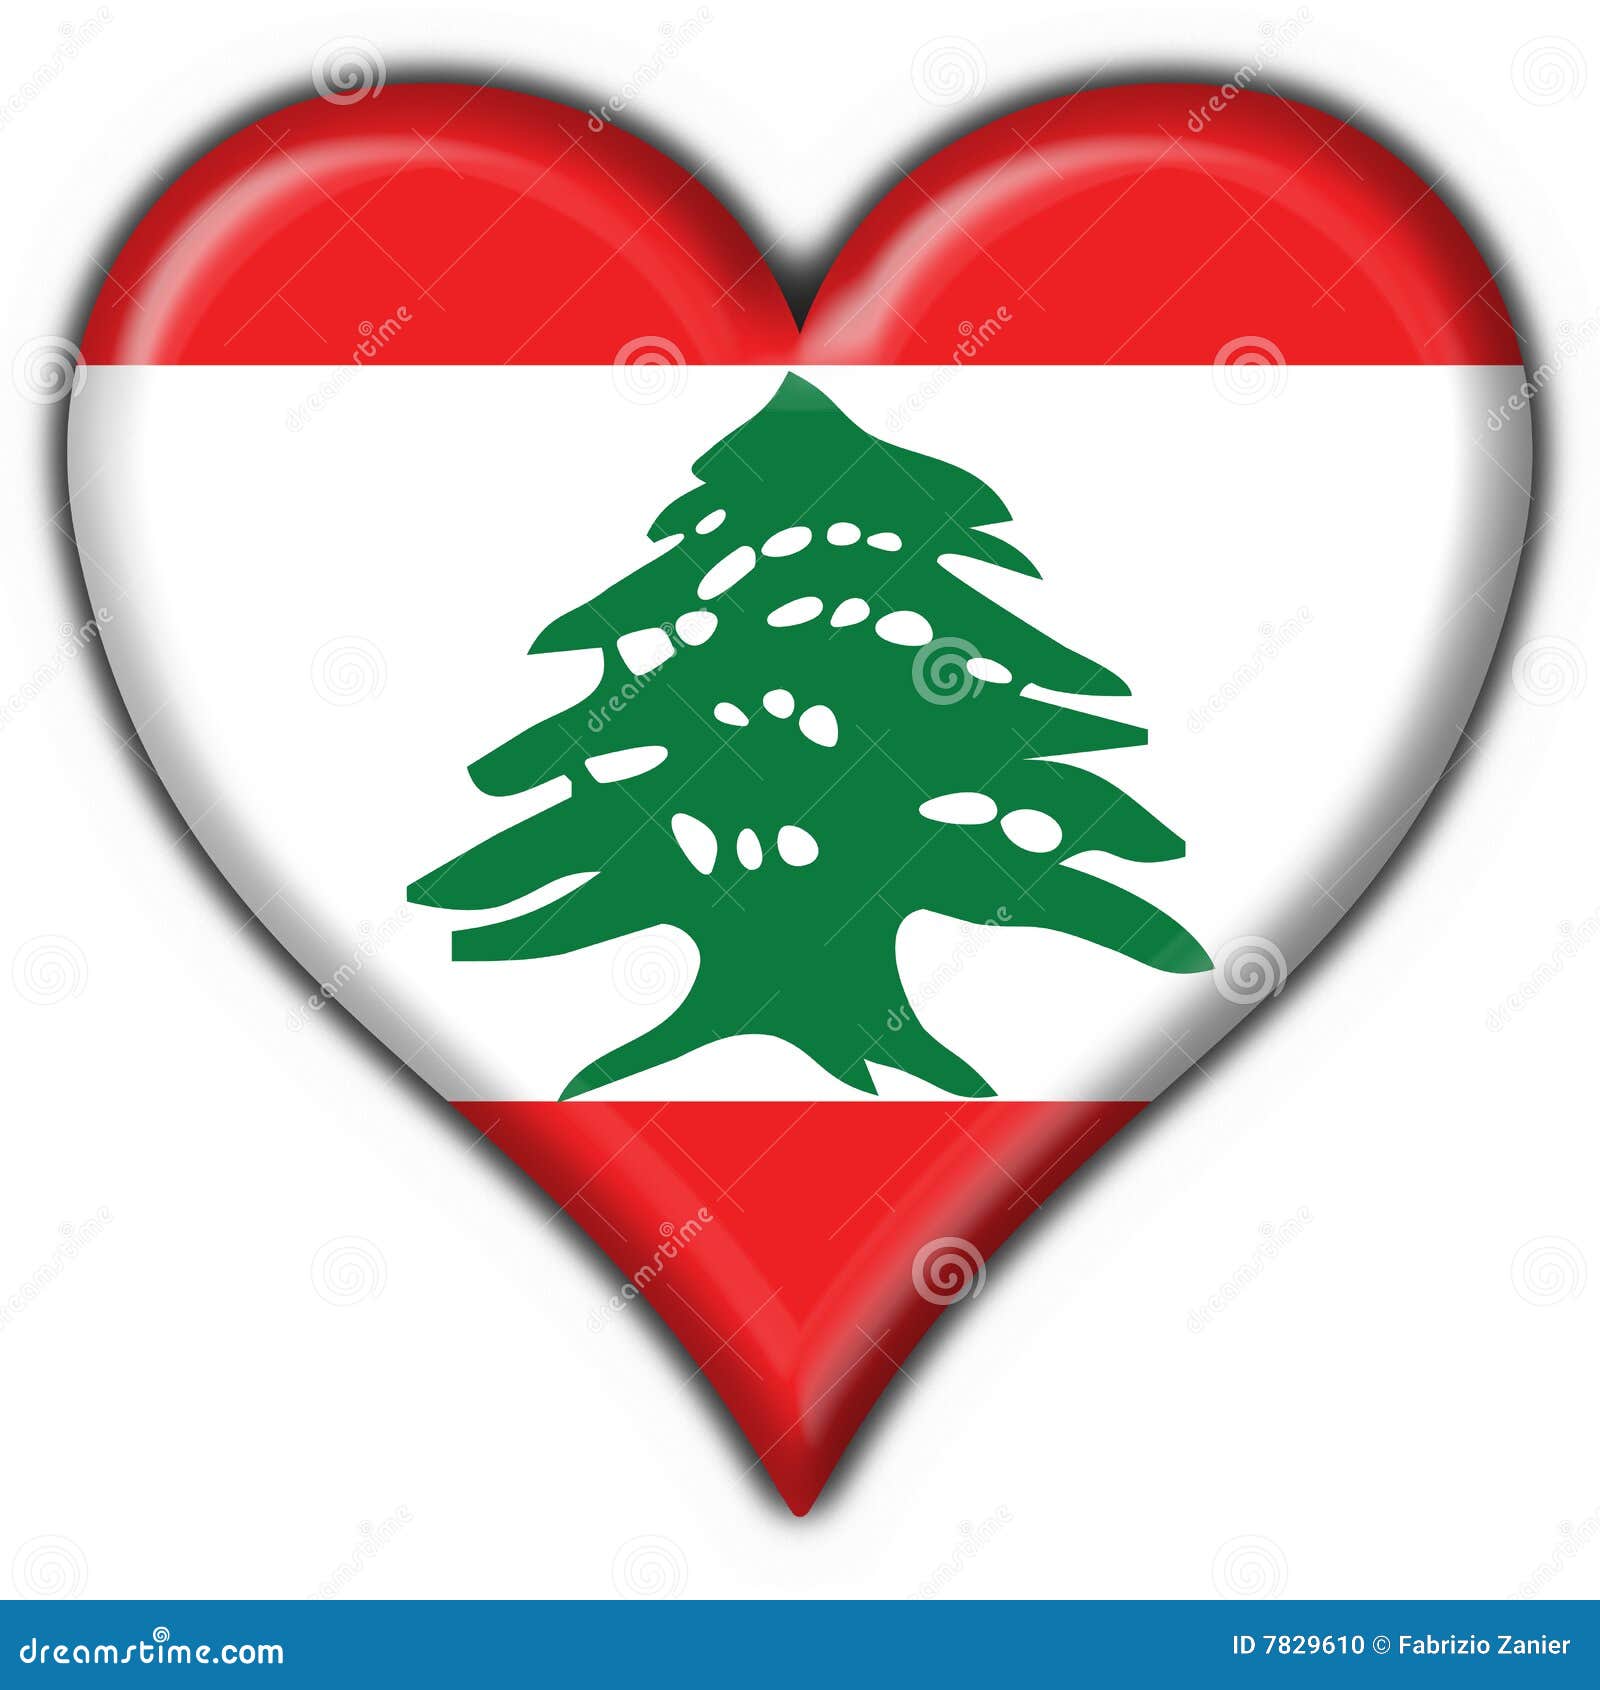 lebanon button flag heart 